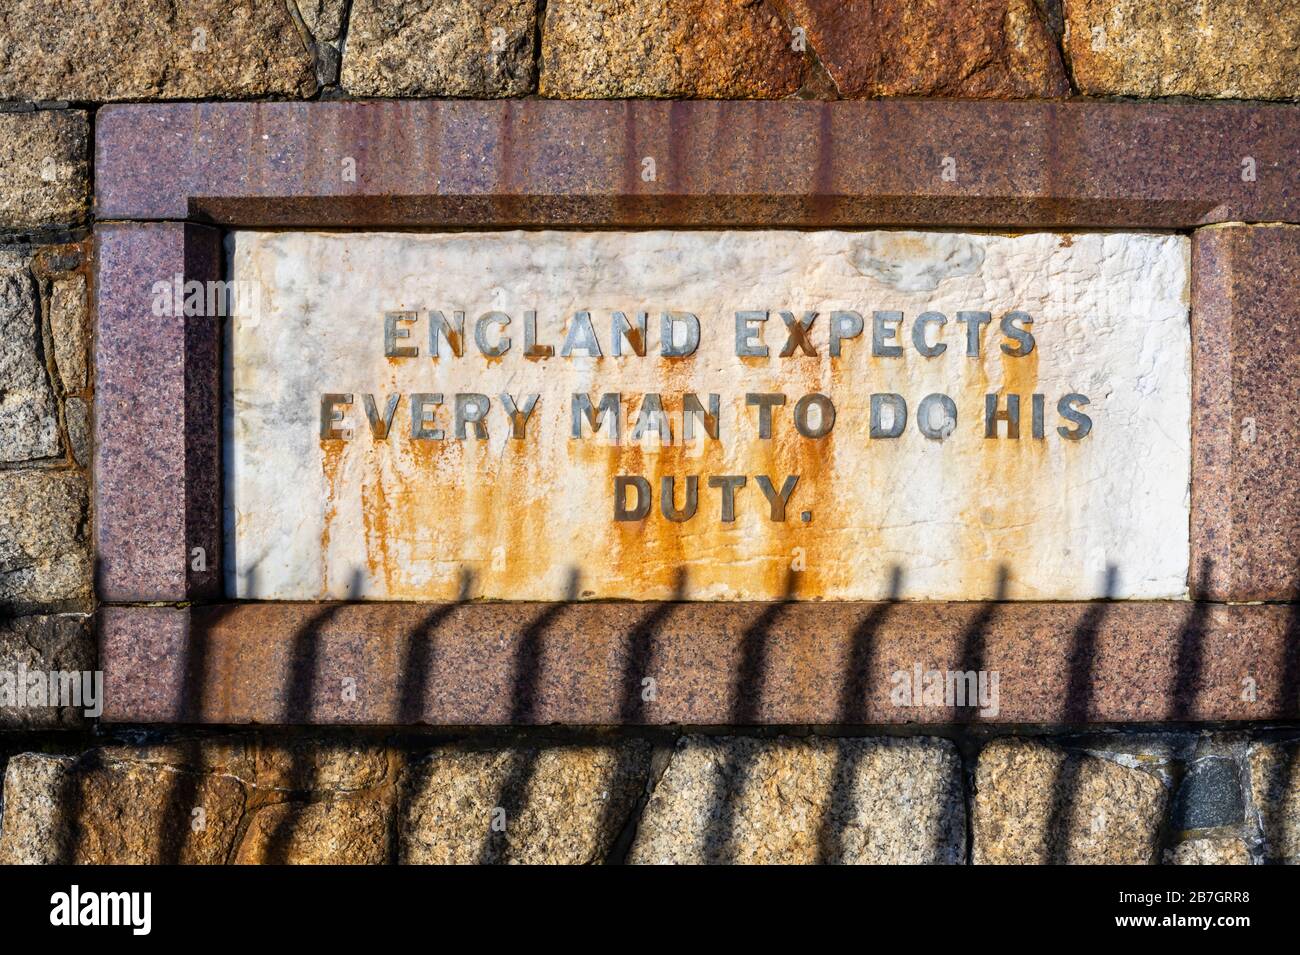 Memorial to the Battle of Trafalgar, England erwartet von jedem Mann, dass er seine Pflicht tut, Strandpromenade in Southsea, Portsmouth, Hants, Südküste Englands Stockfoto